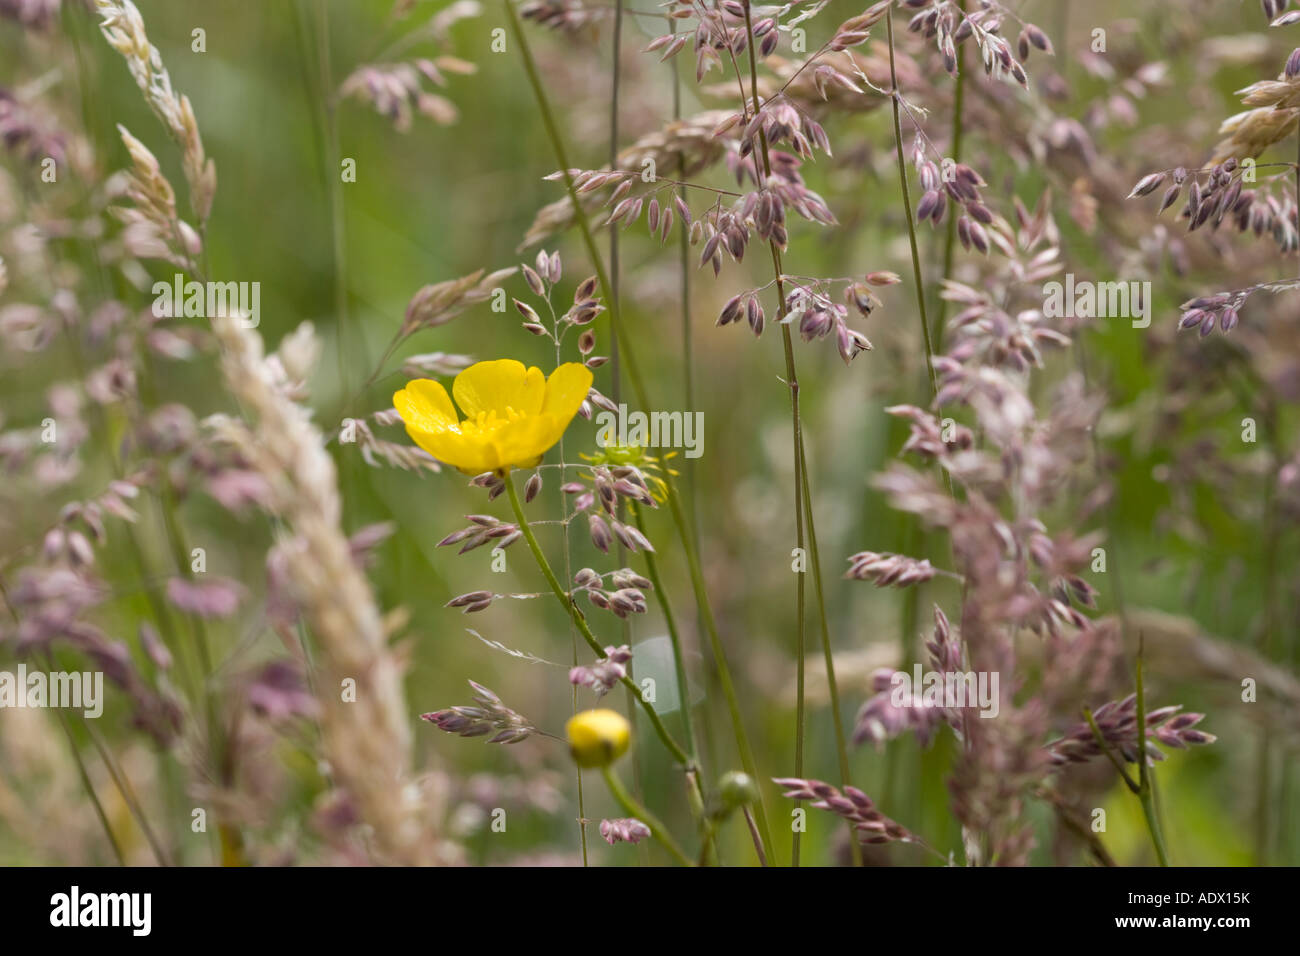 Seul meadow buttercup sur les frondes de pourpre de meadow grass Banque D'Images